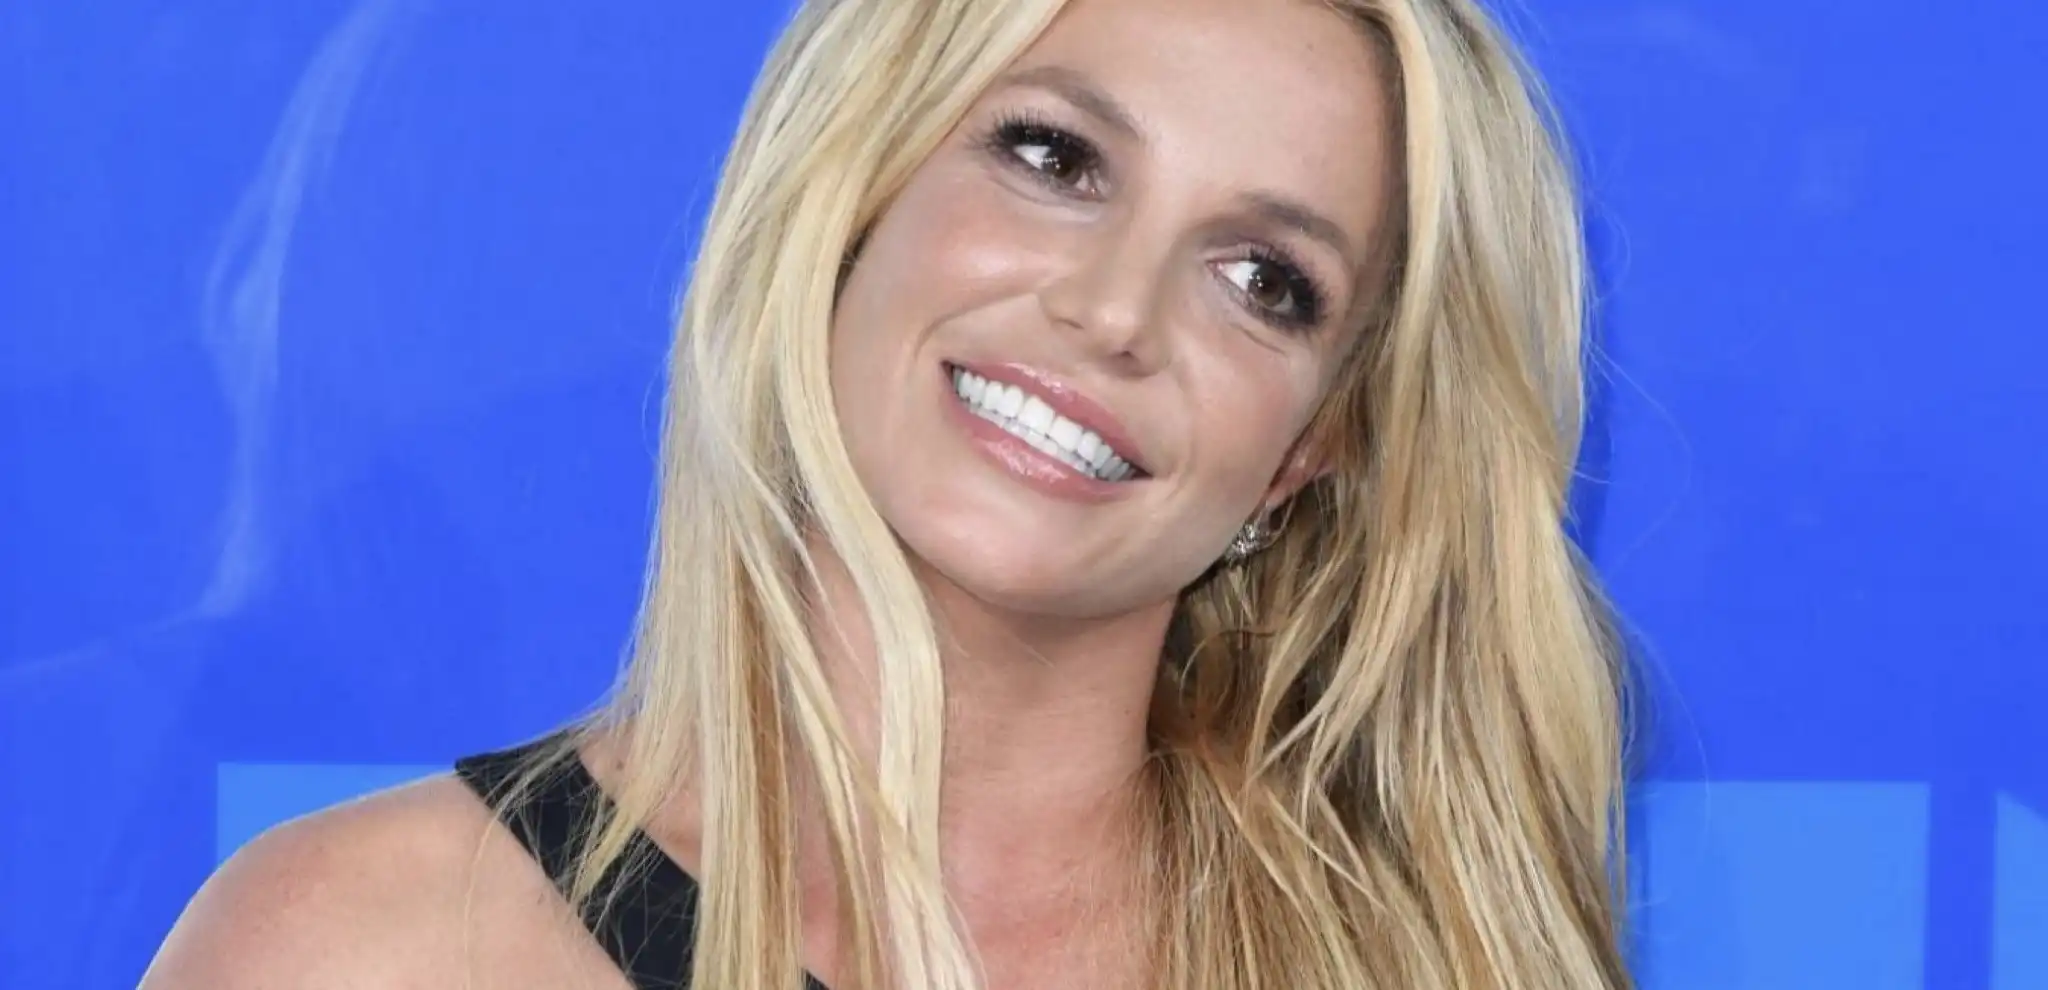 Fortement inquiets, les fans de Britney Spears envoient la police à son domicile